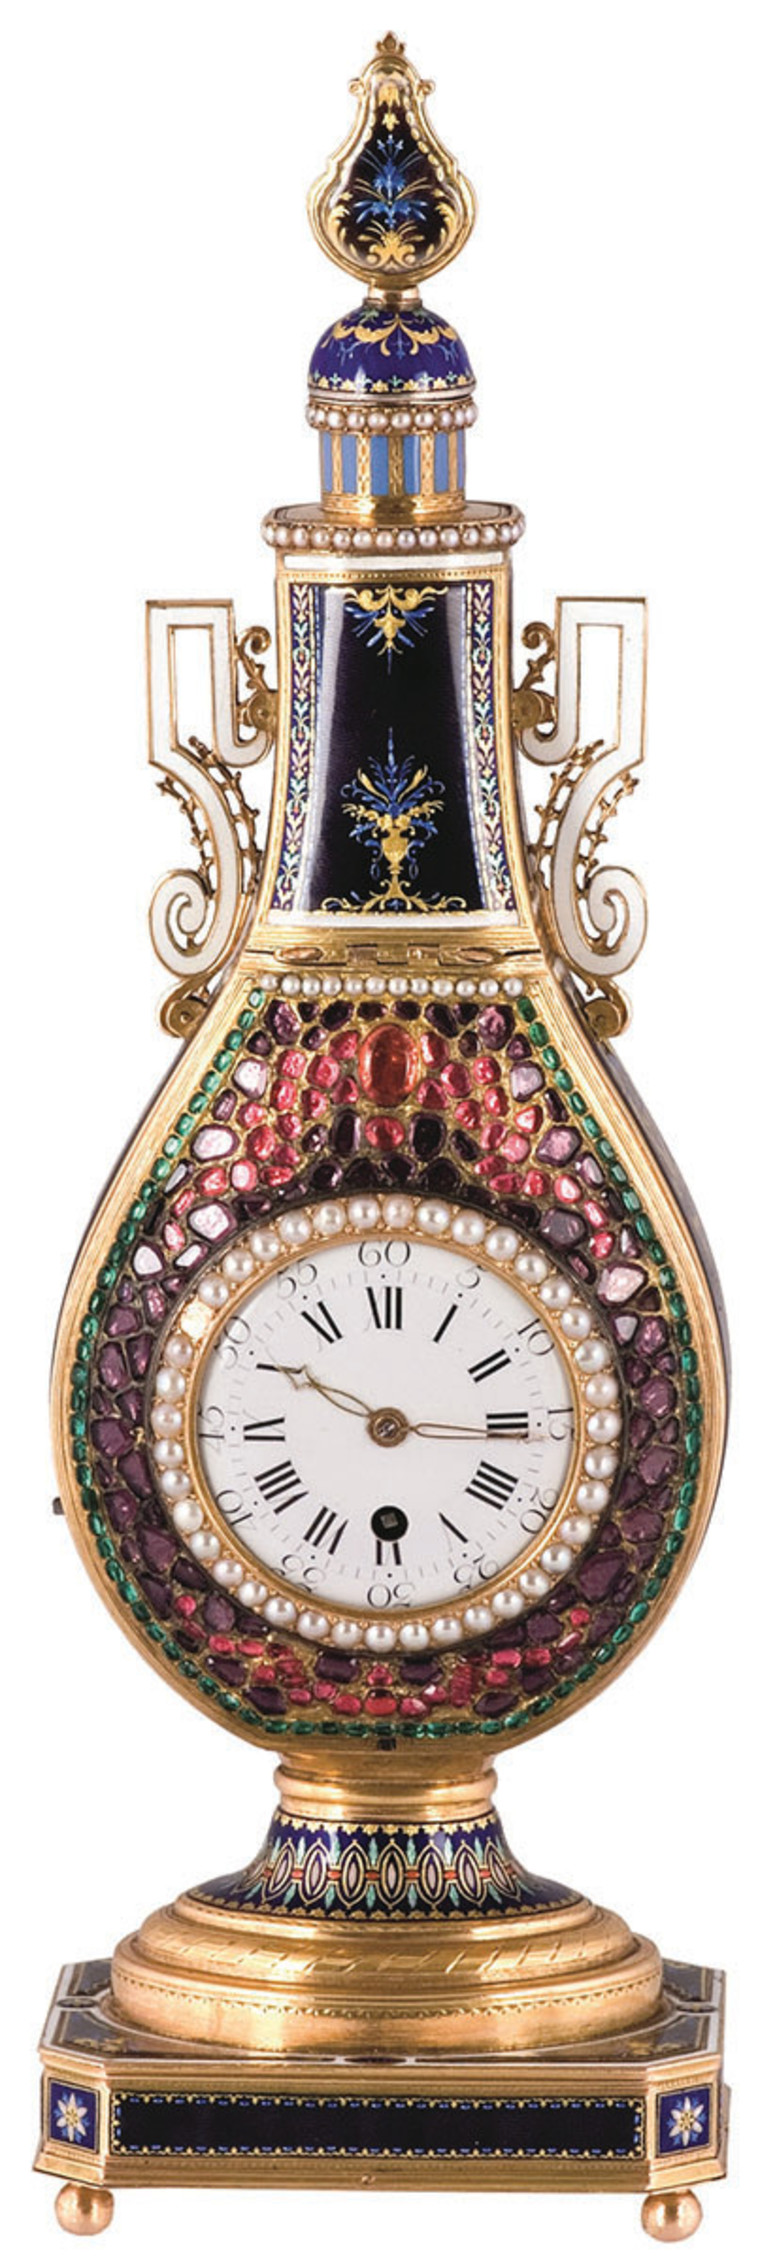 בקבוק עם שעון וציפור מזמרת. ז'אקה - דרוז וולשו. לונדון 1800 (צילום: אבשלום אביטל,דניאלה גולן)